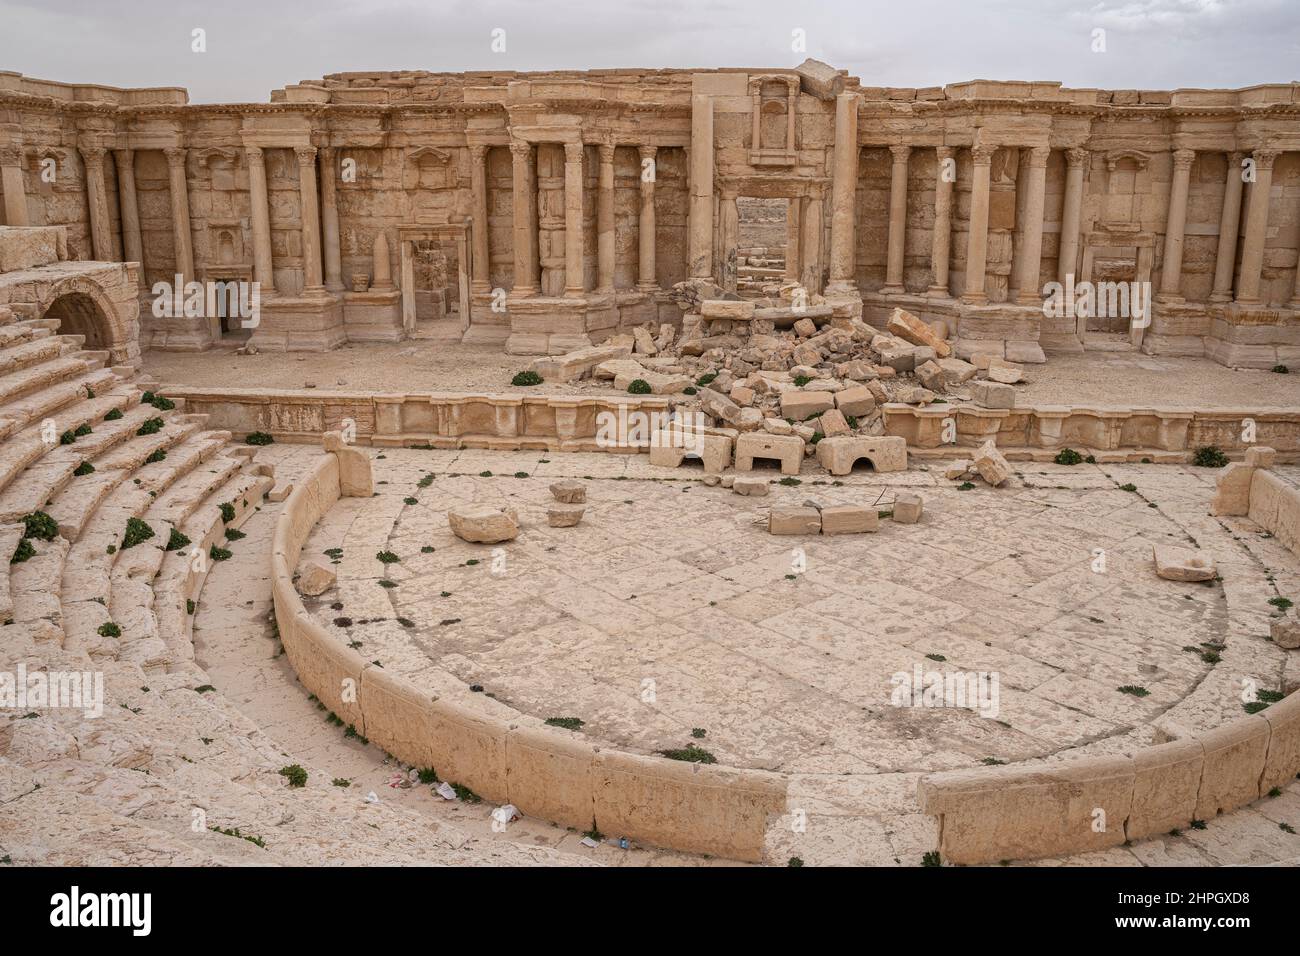 The antique Theatre of Palmyra, Syria Stock Photo